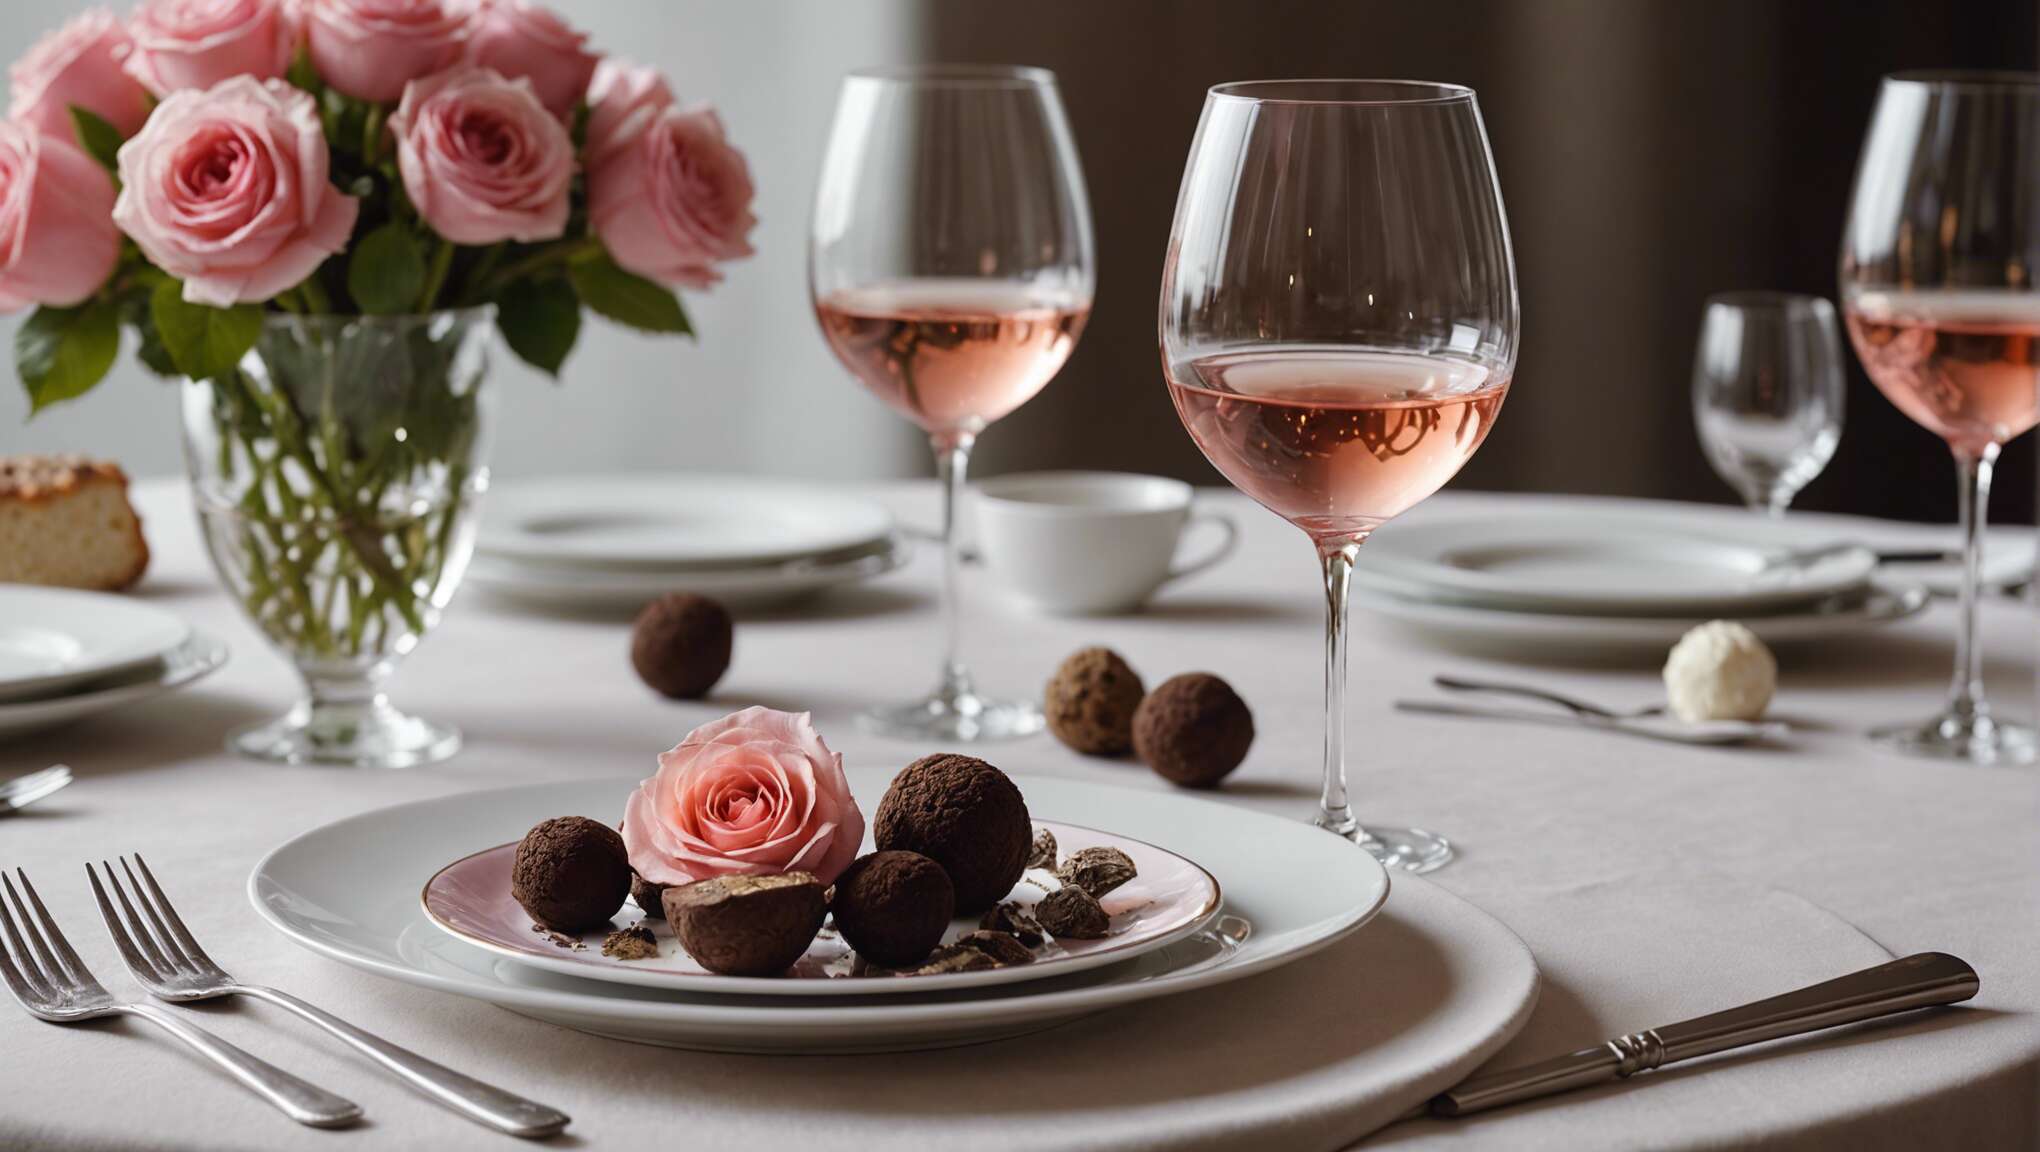 Choisir le bon rosé pour sublimer les saveurs de la truffe